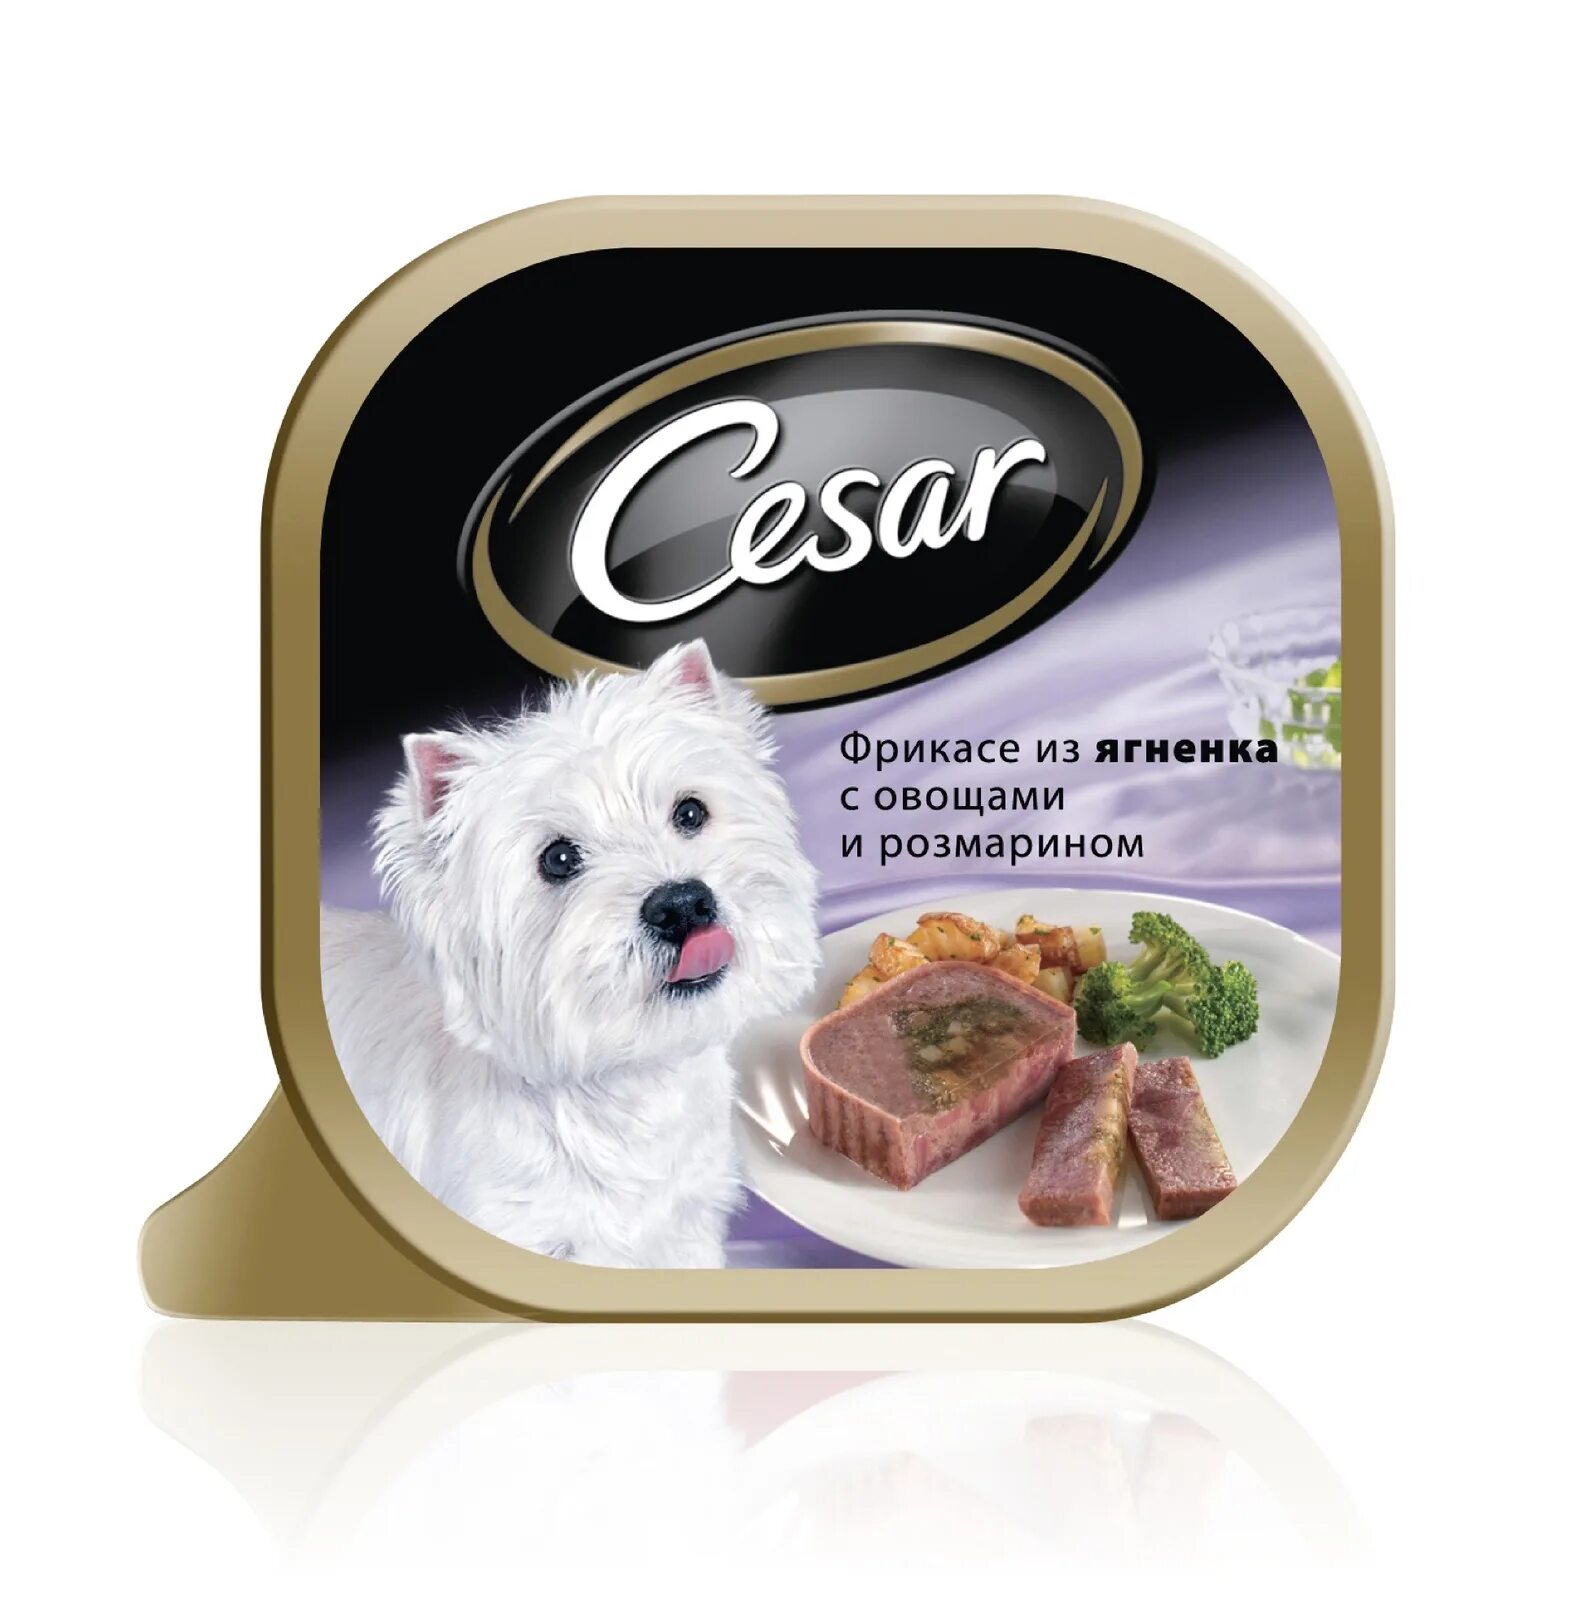 Влажный корм для собак Cesar из говядины с овощами 100г. Cesar консервы для собак. Влажный корм для собак Cesar. Готовый корм для собак